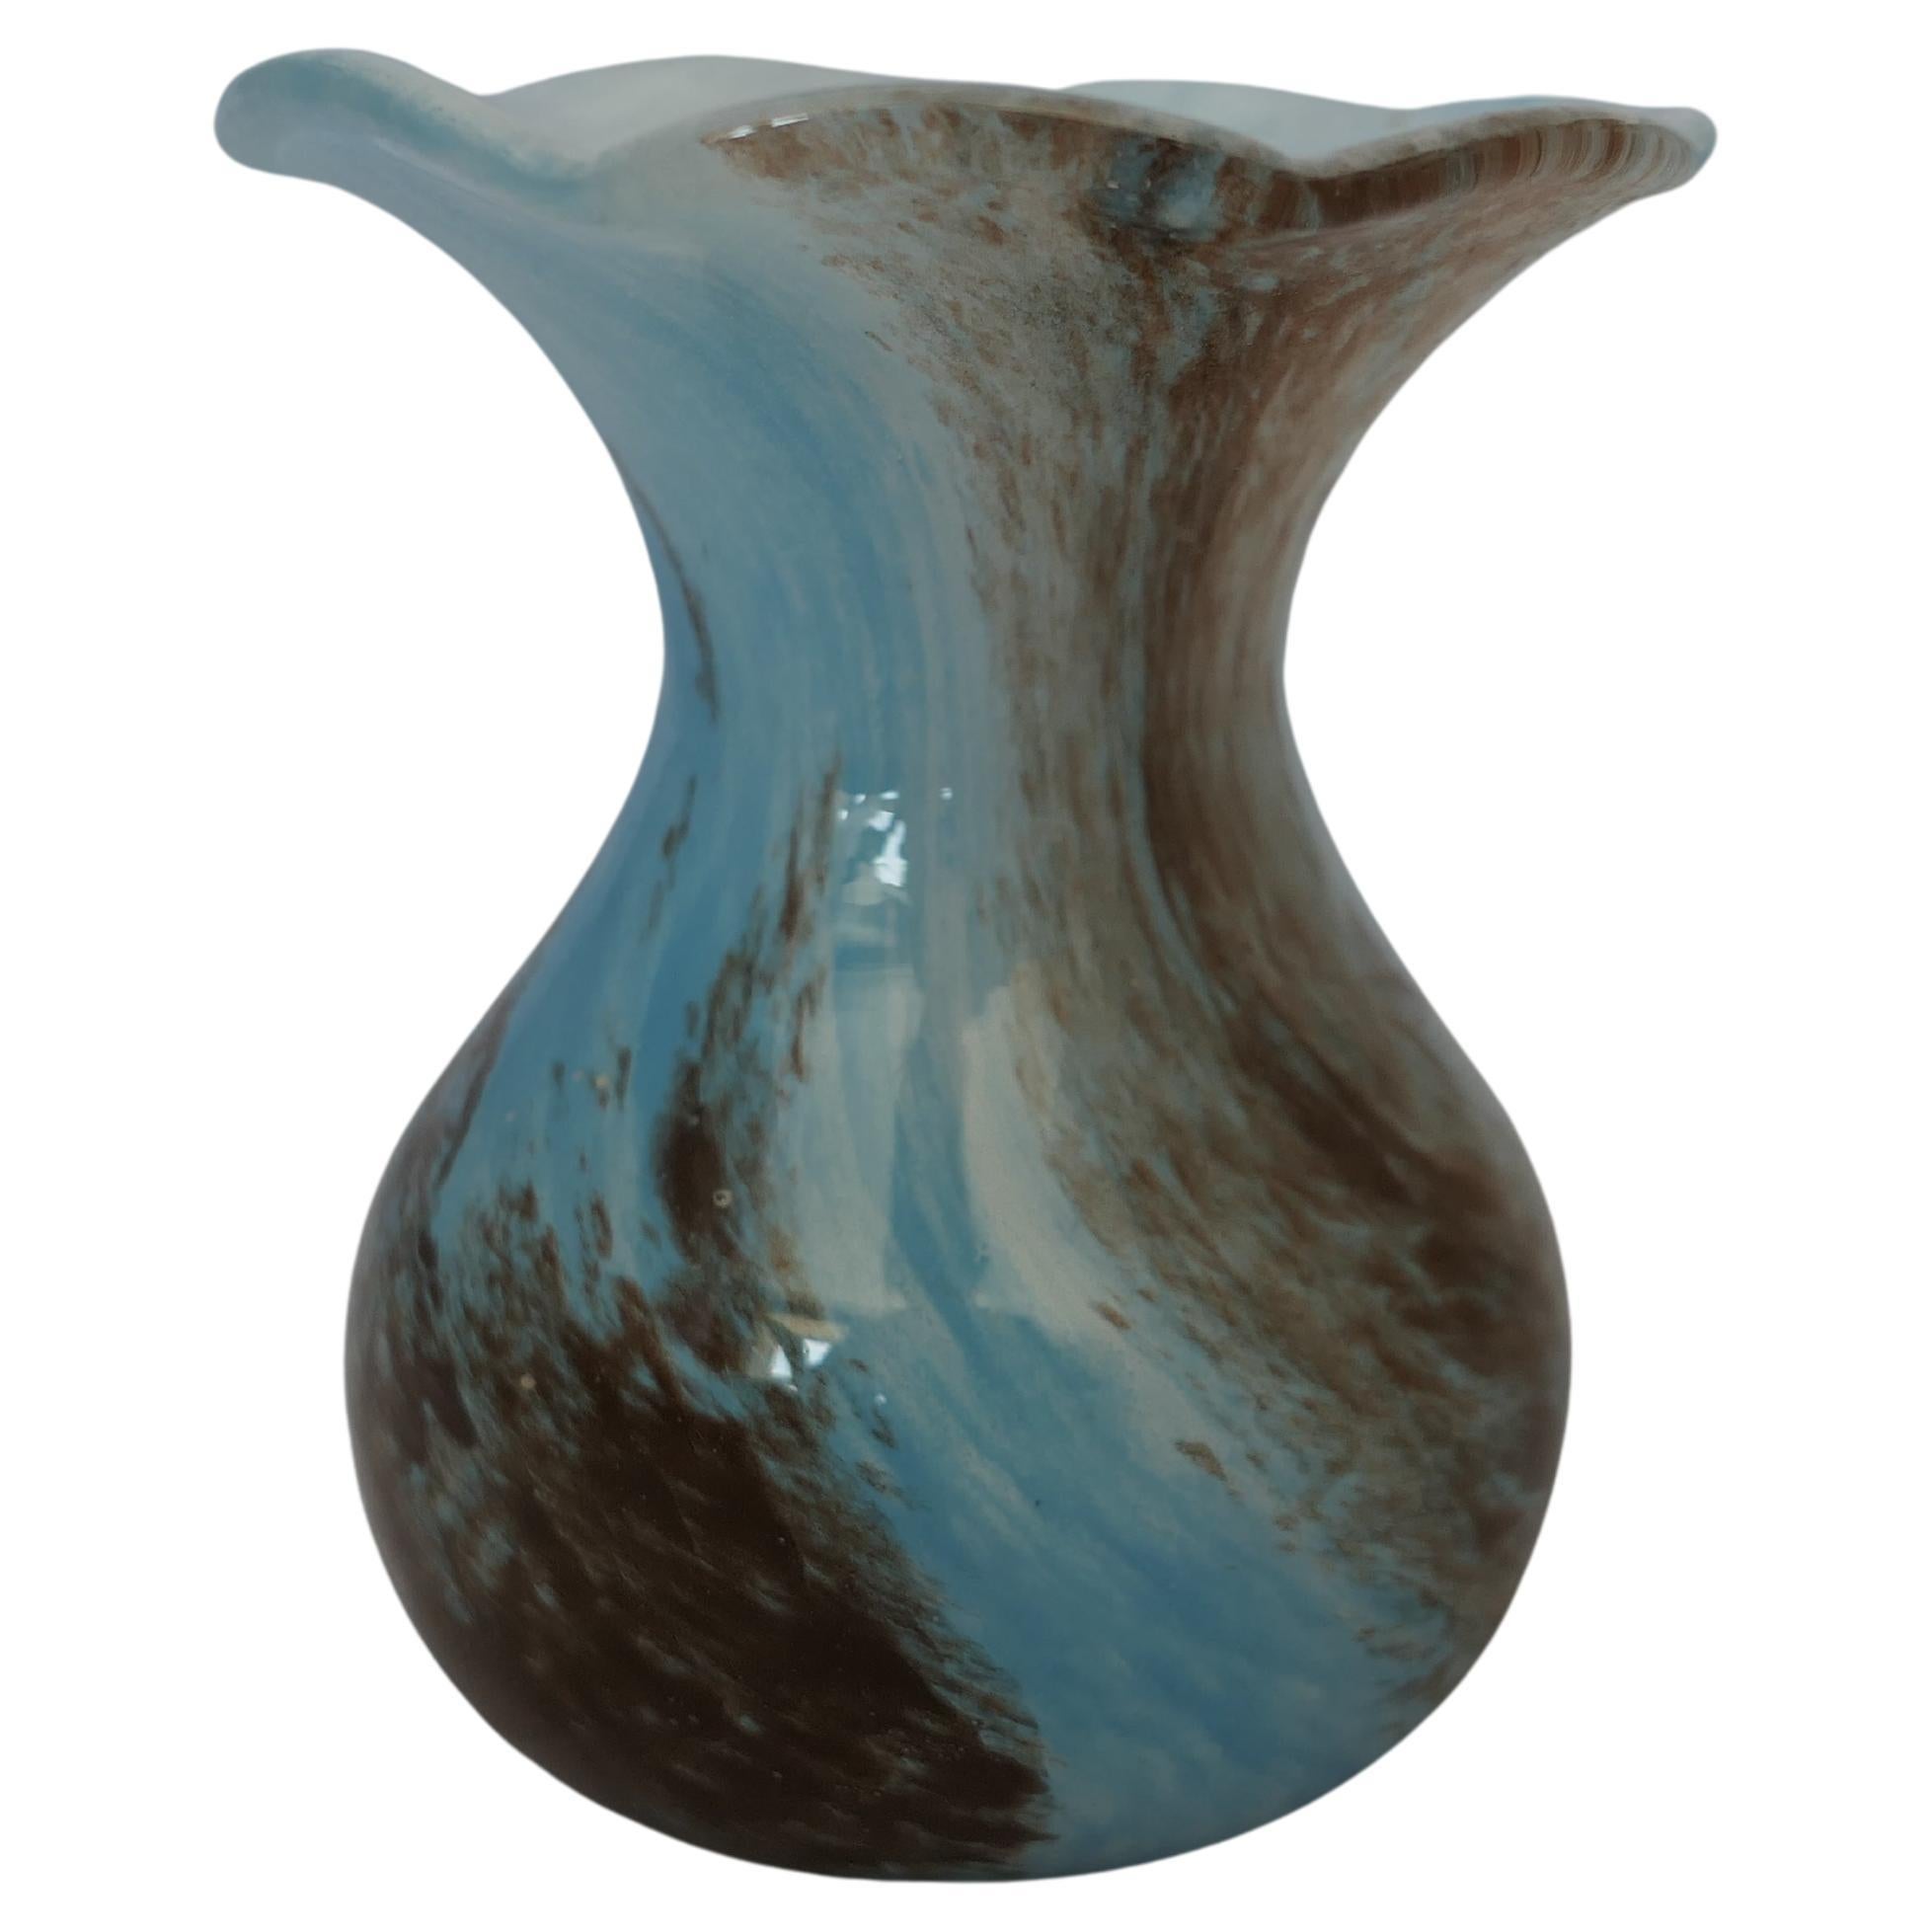 Hand Blown Victorian Blue Posy Vase  A delightful Victorian Posy Vase